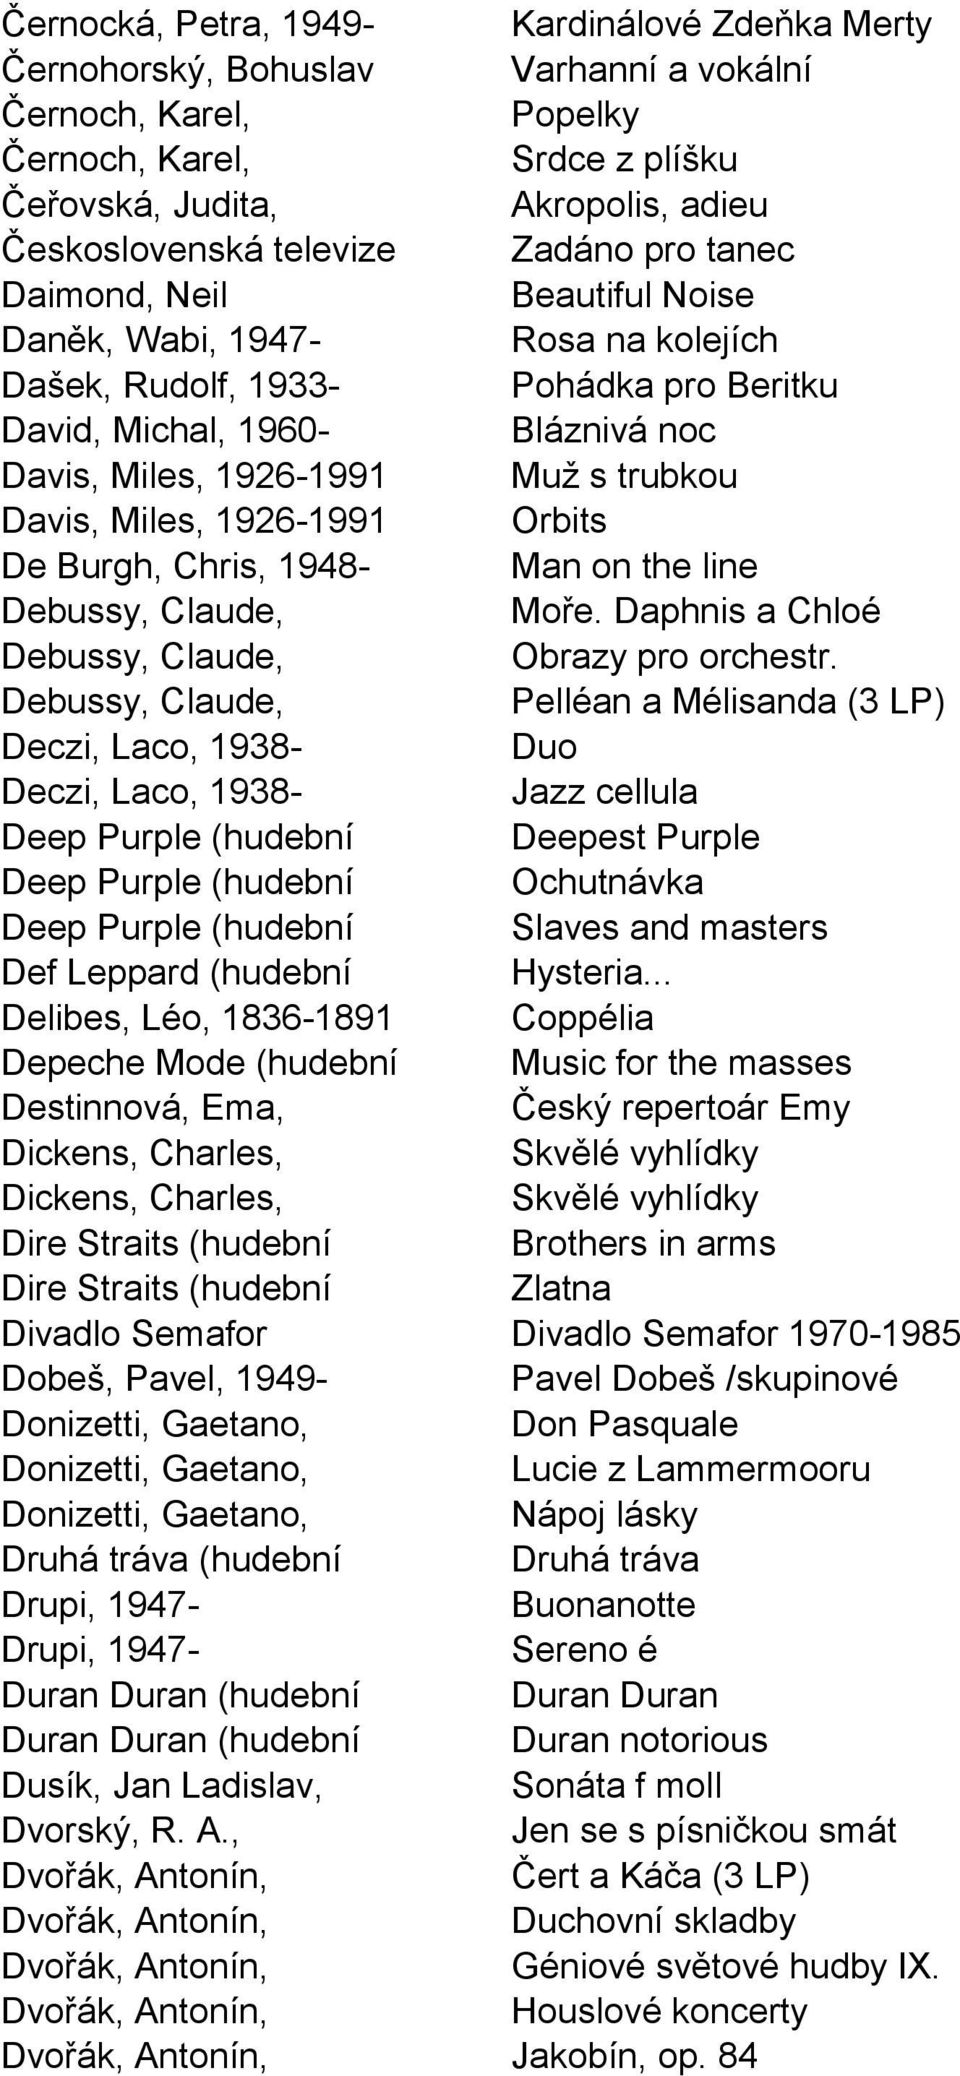 trubkou Davis, Miles, 1926-1991 Orbits De Burgh, Chris, 1948- Man on the line Debussy, Claude, Moře. Daphnis a Chloé Debussy, Claude, Obrazy pro orchestr.